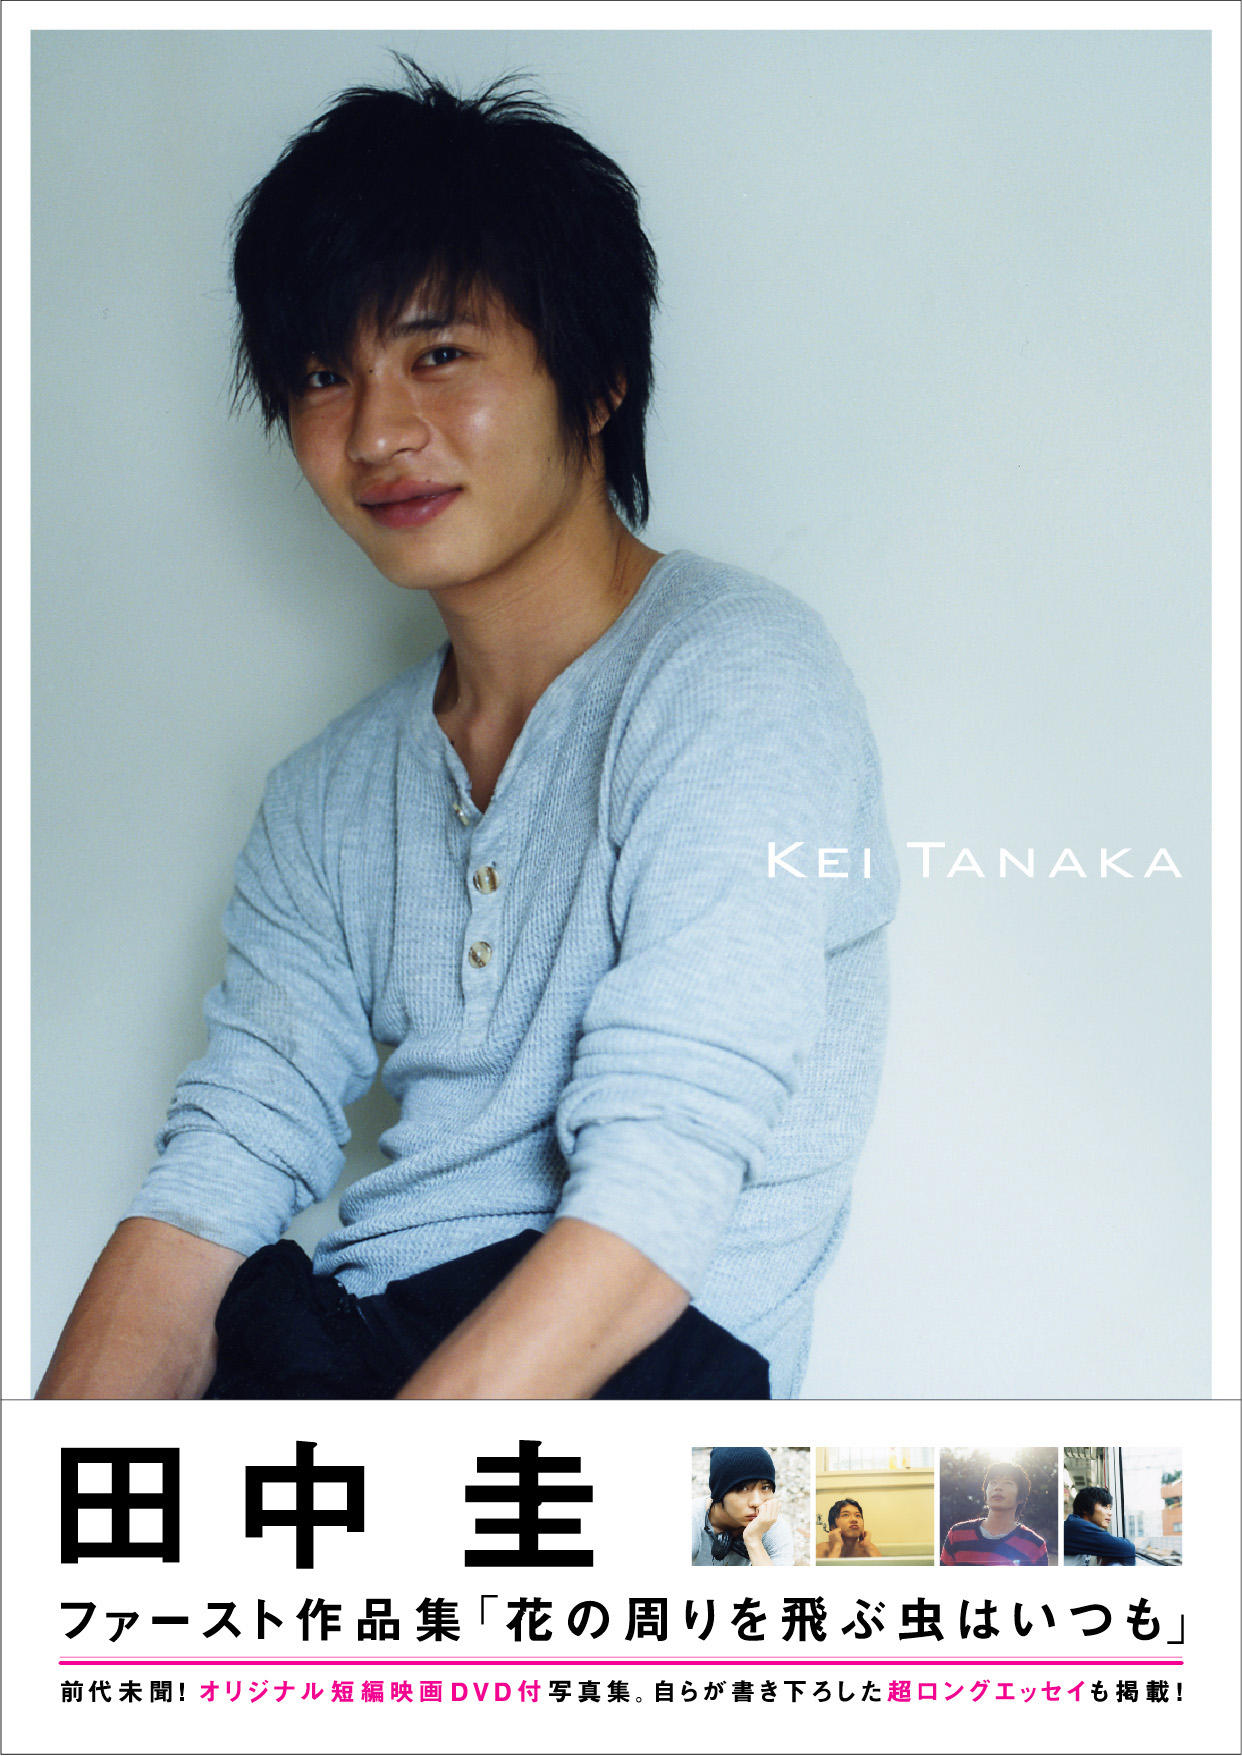 おしゃれイズム 注目度ナンバーワン俳優 田中圭 見所 暴露話 話題のニュースの詳細ブログ